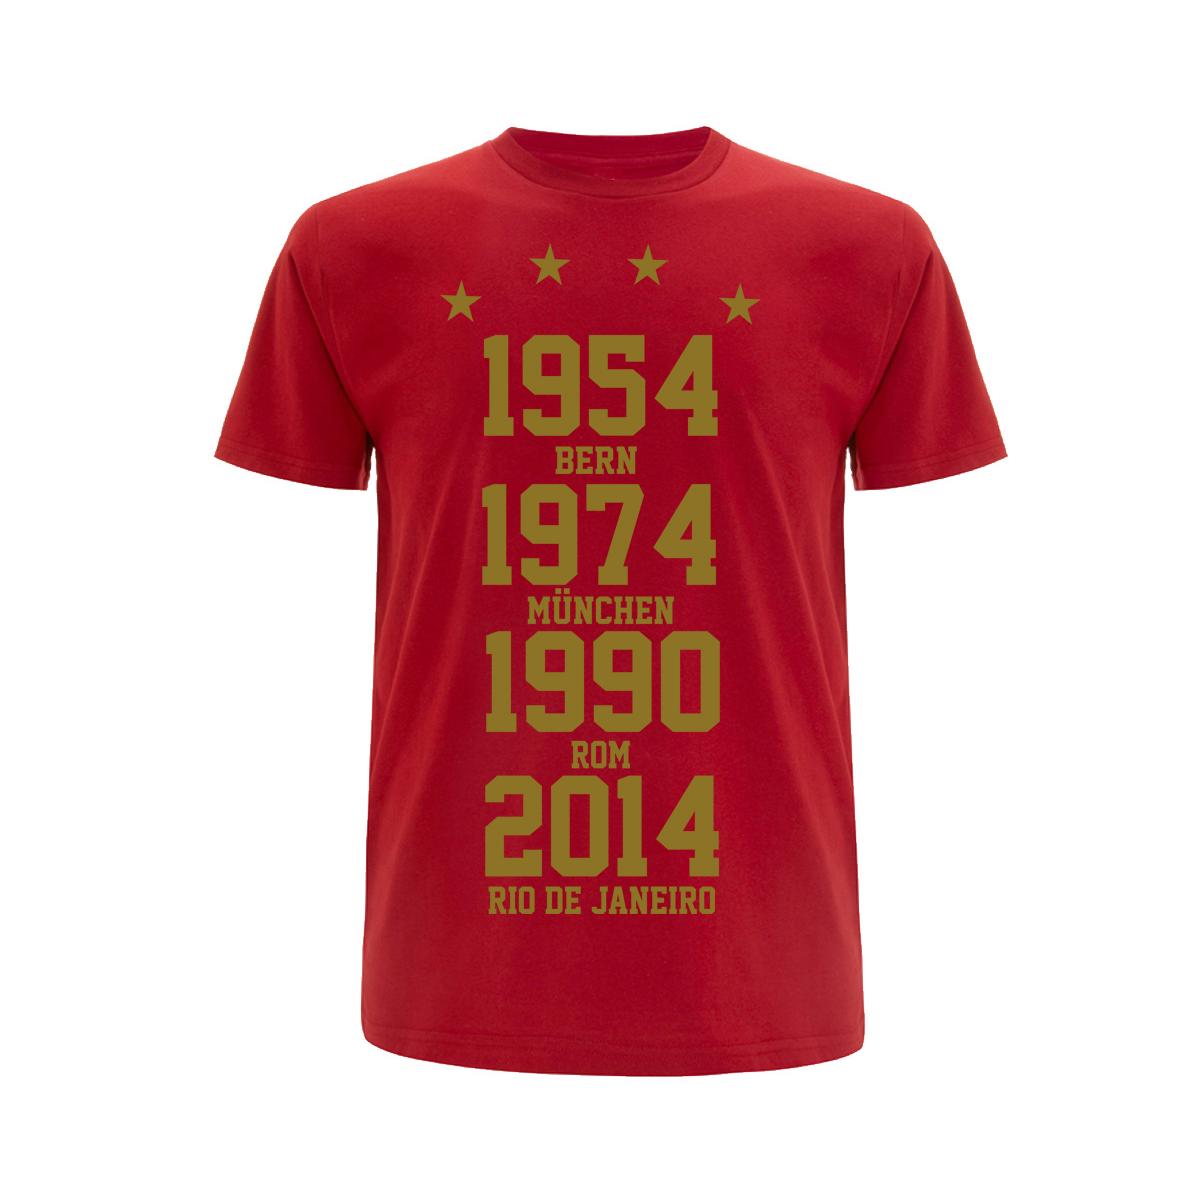 Weltmeister 54-74-90-14 - Männer T-Shirt - rot-gold